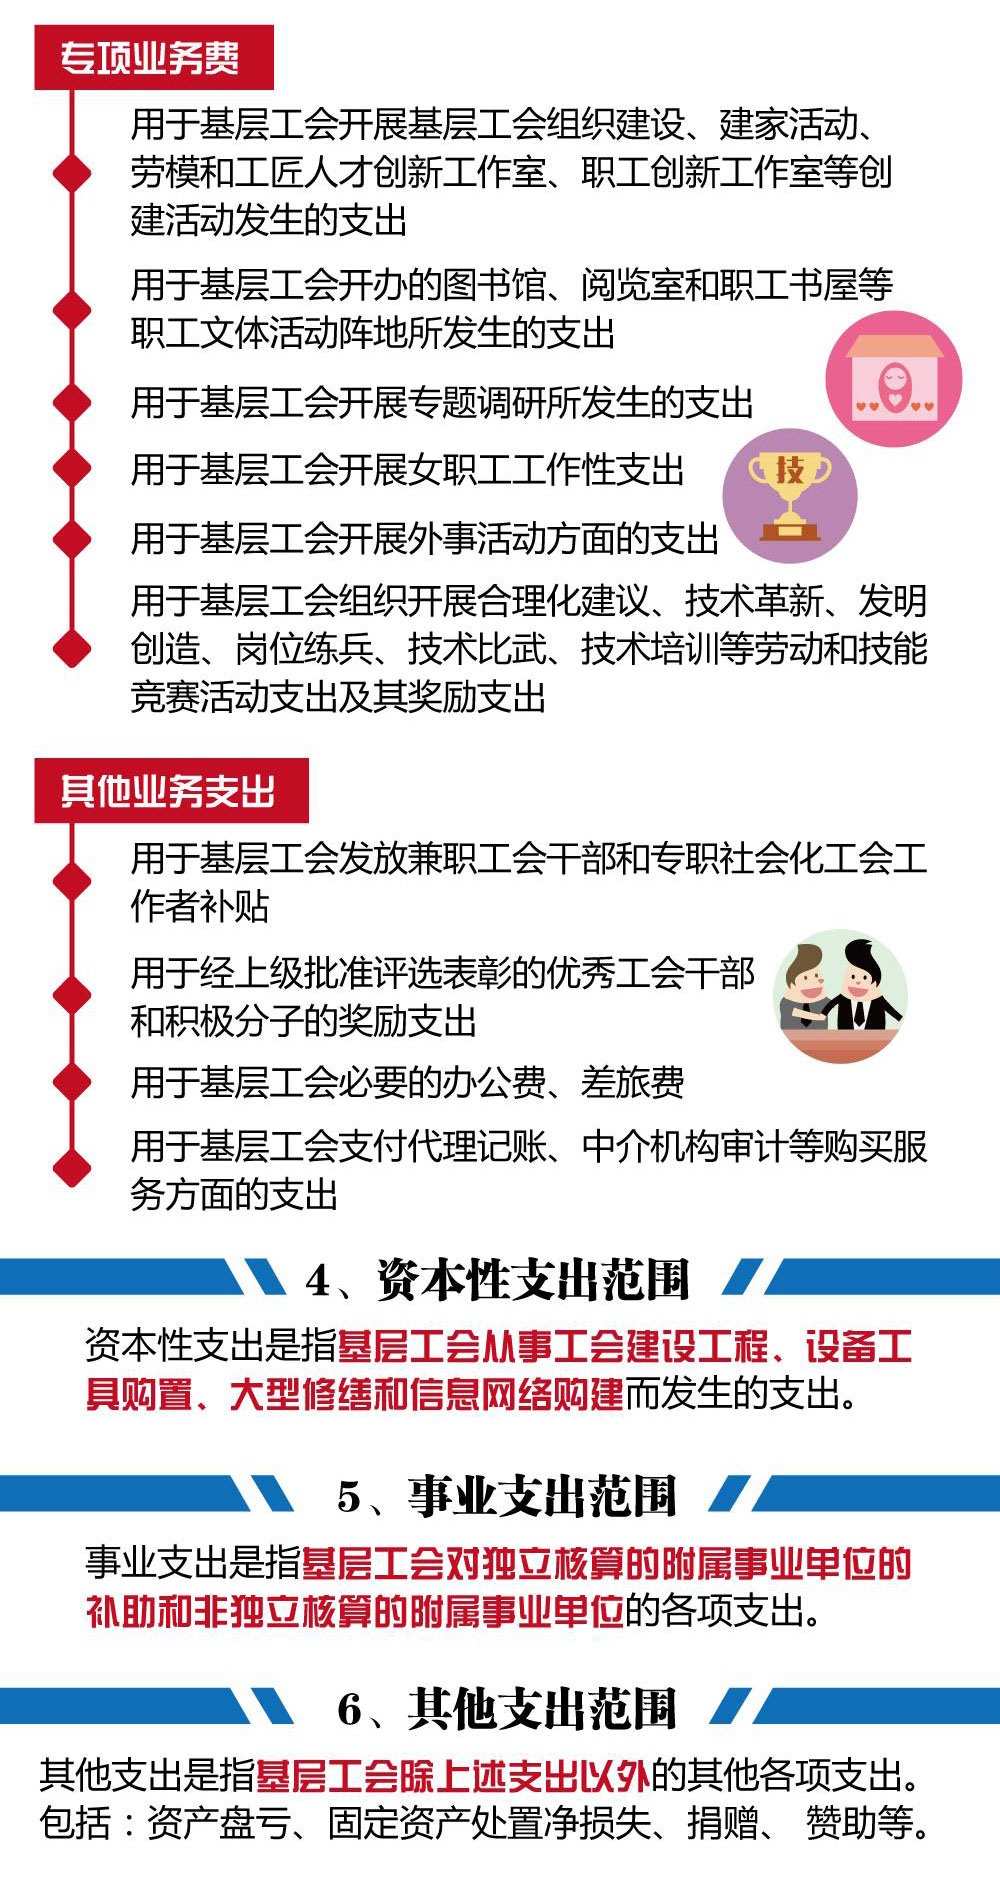 上海热线HOT新闻--工会经费怎么用?权威图解